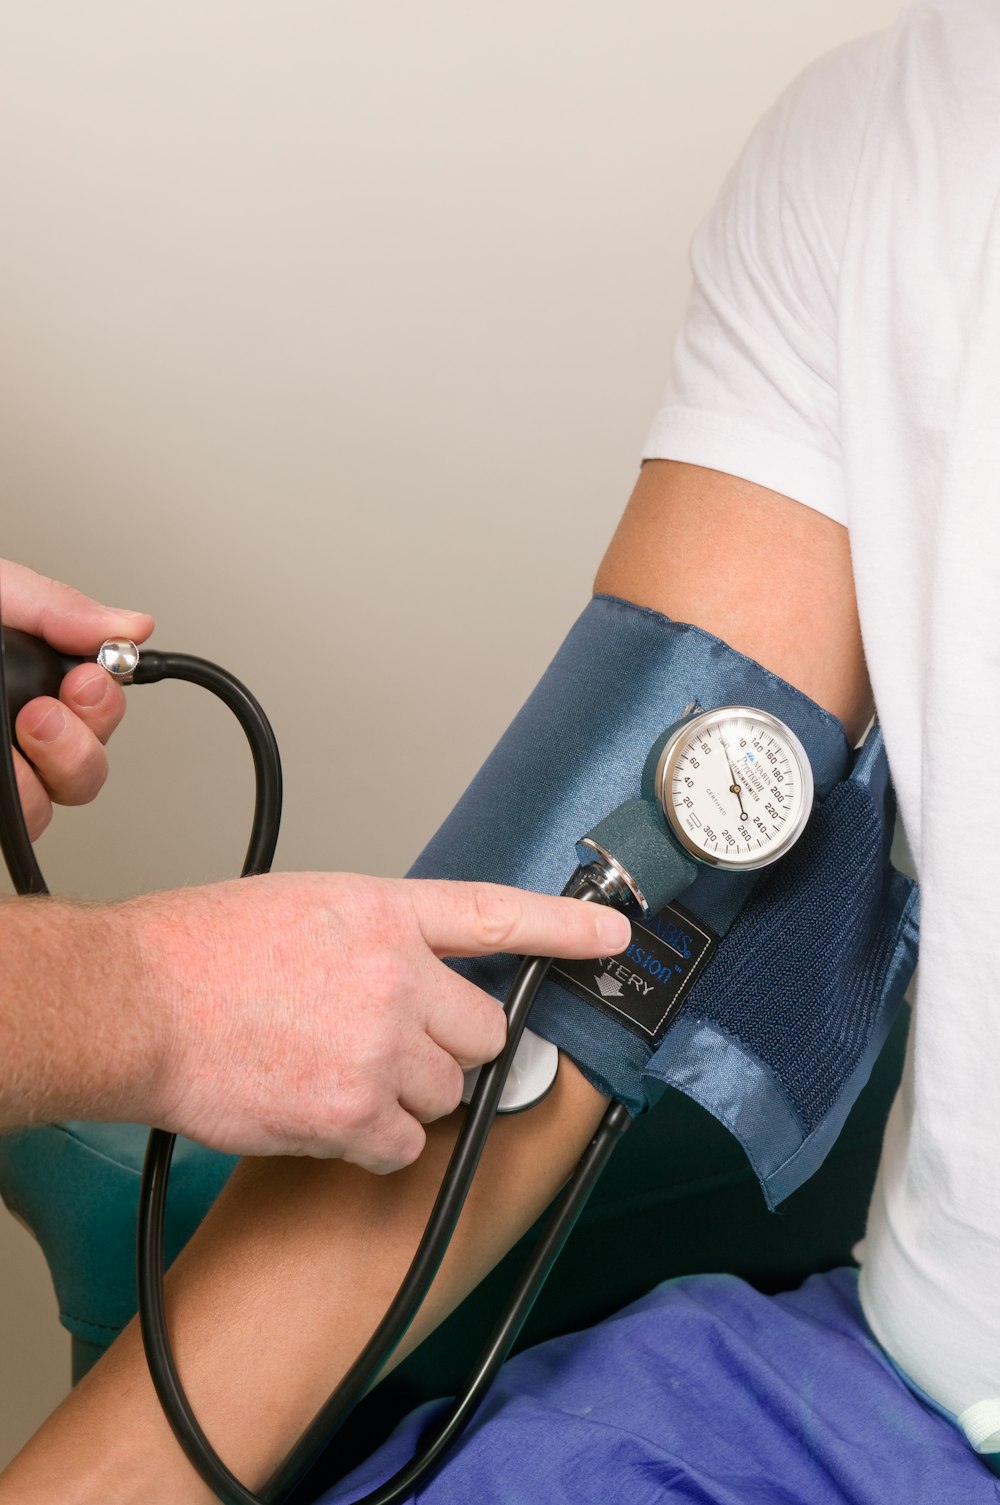 un médico que controla la presión arterial de un paciente